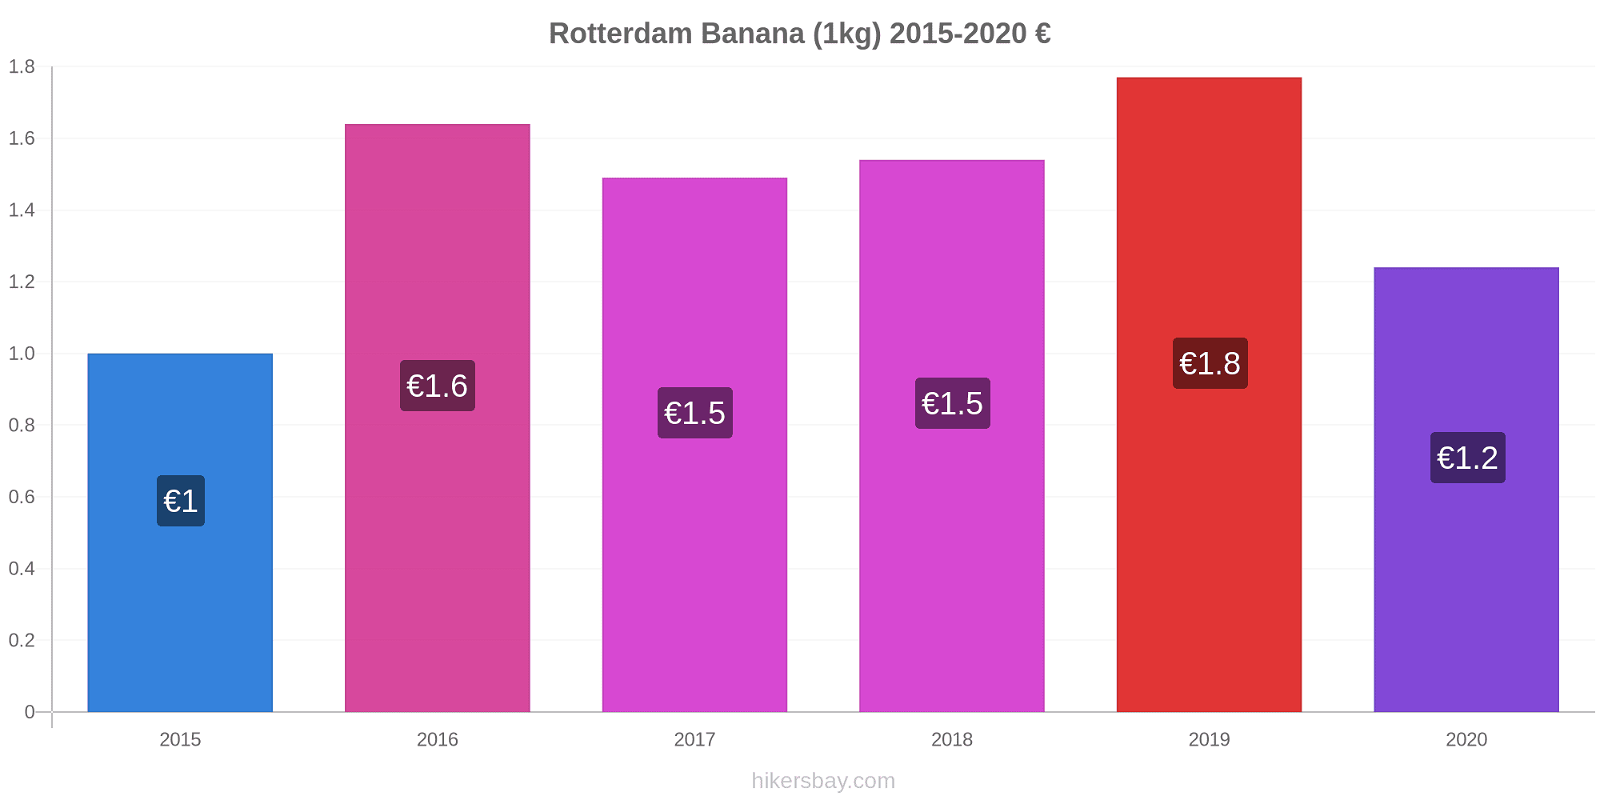 Rotterdam modificări de preț Banana (1kg) hikersbay.com